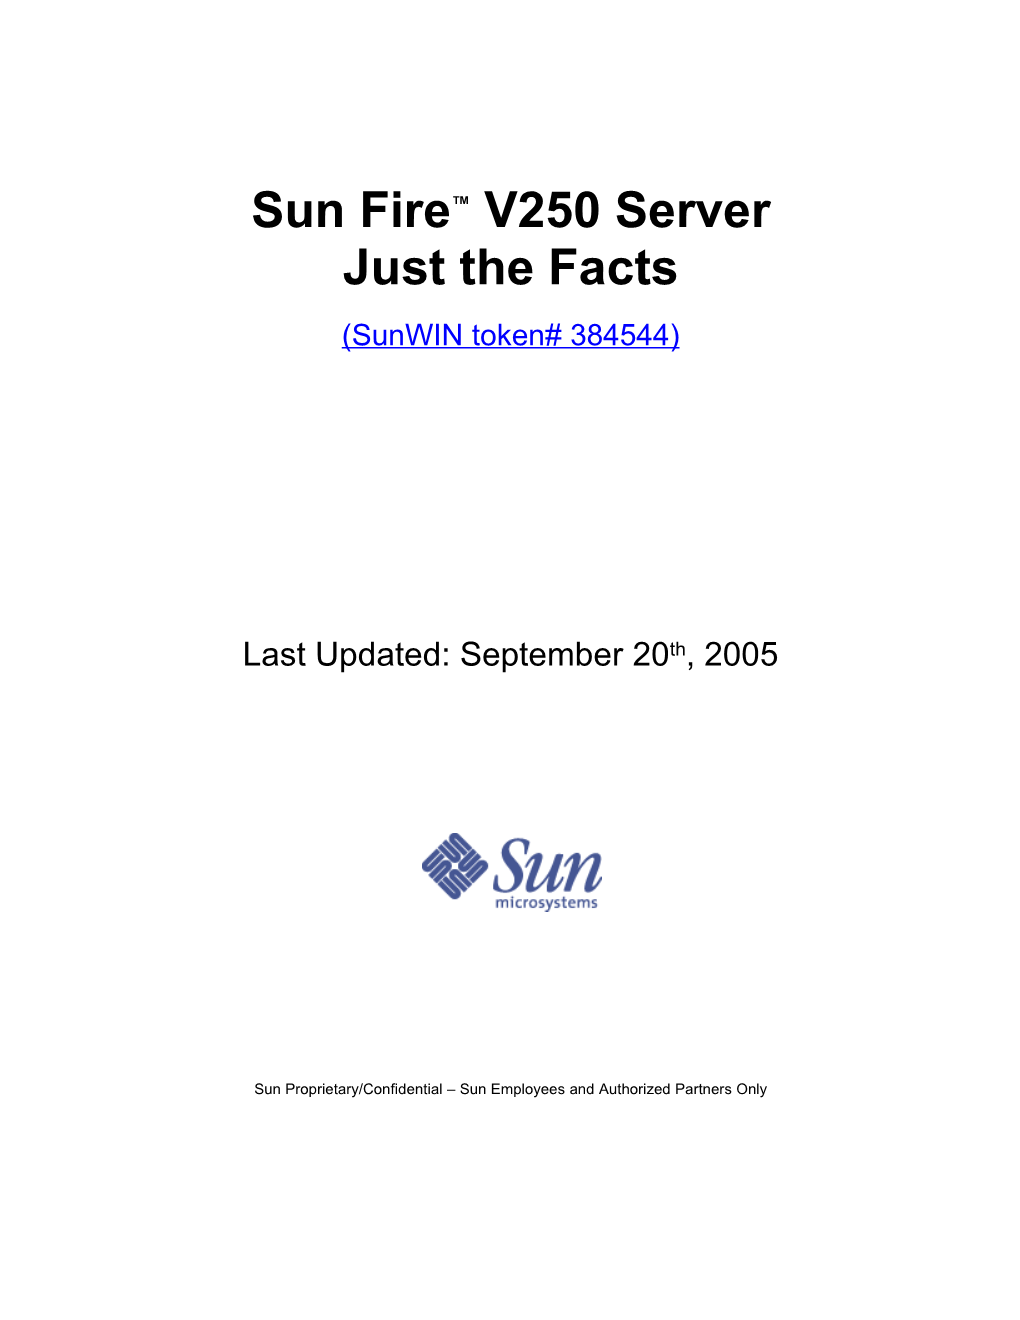 Sun Fire™ V250 Server Just the Facts (Sunwin Token# 384544)